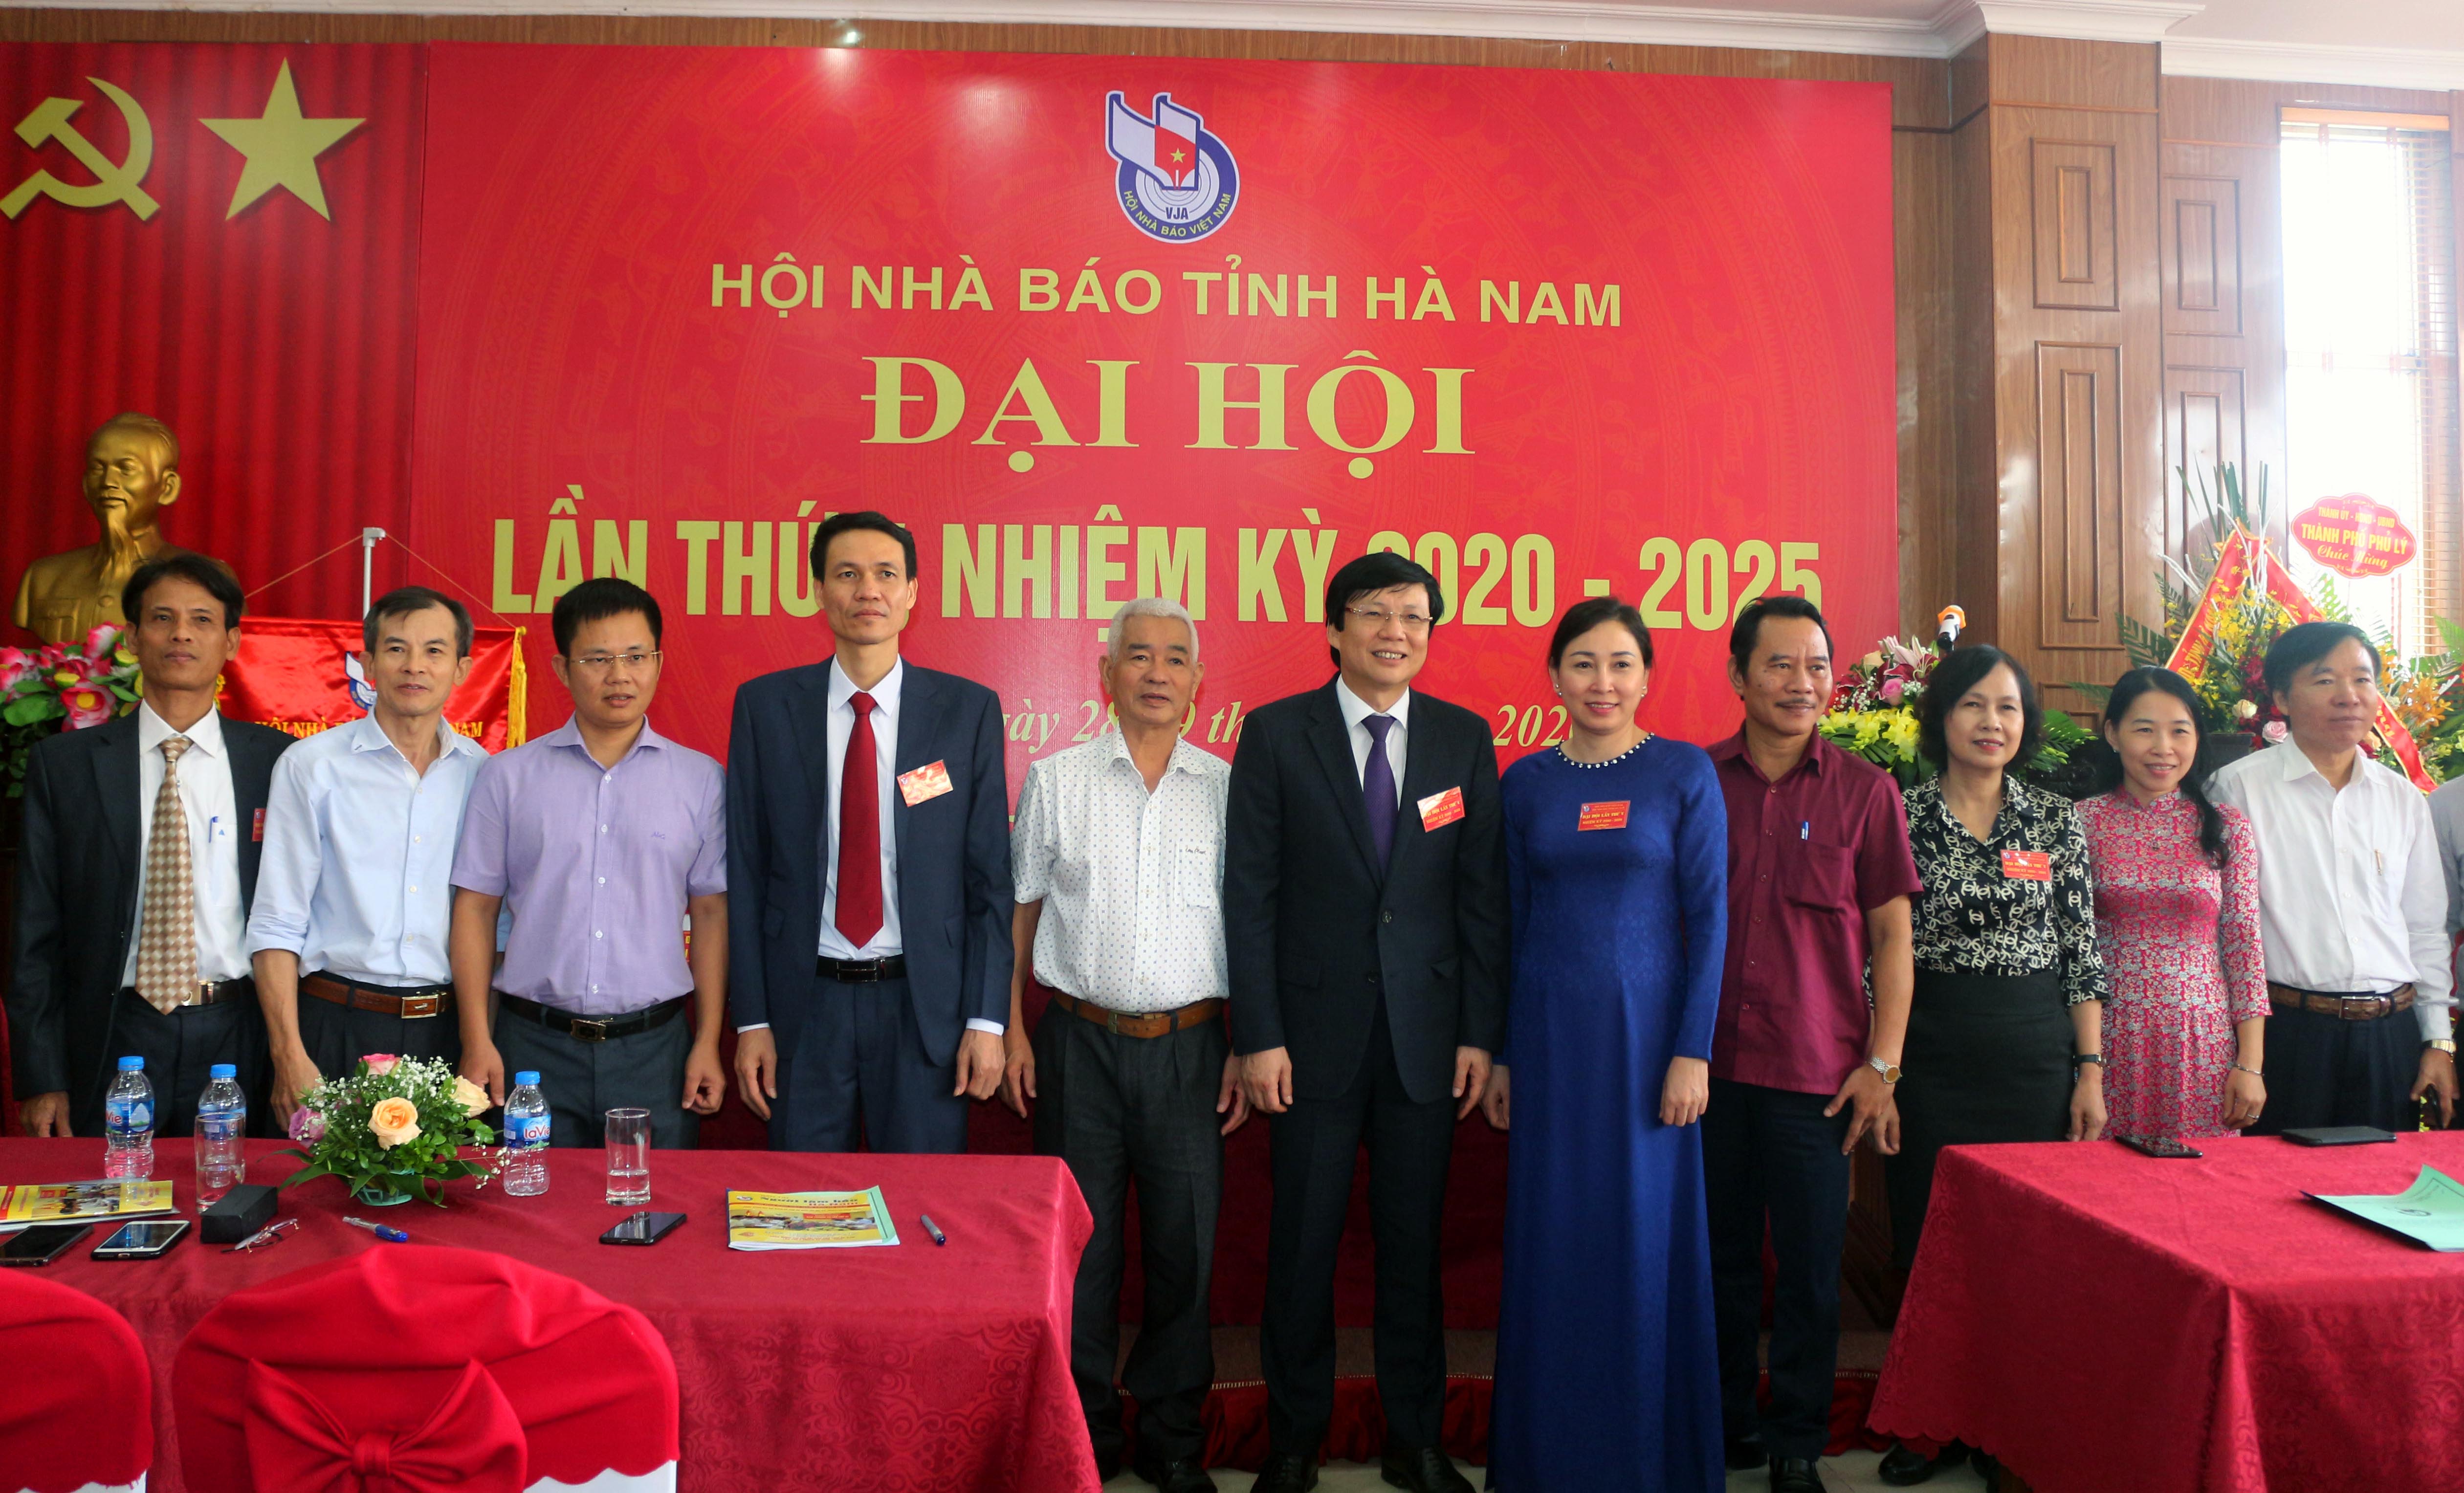 Hội Nhà báo tỉnh Hà Nam tích cực đổi mới nội dung phương thức hoạt động xây dựng tổ chức hội vững mạnh